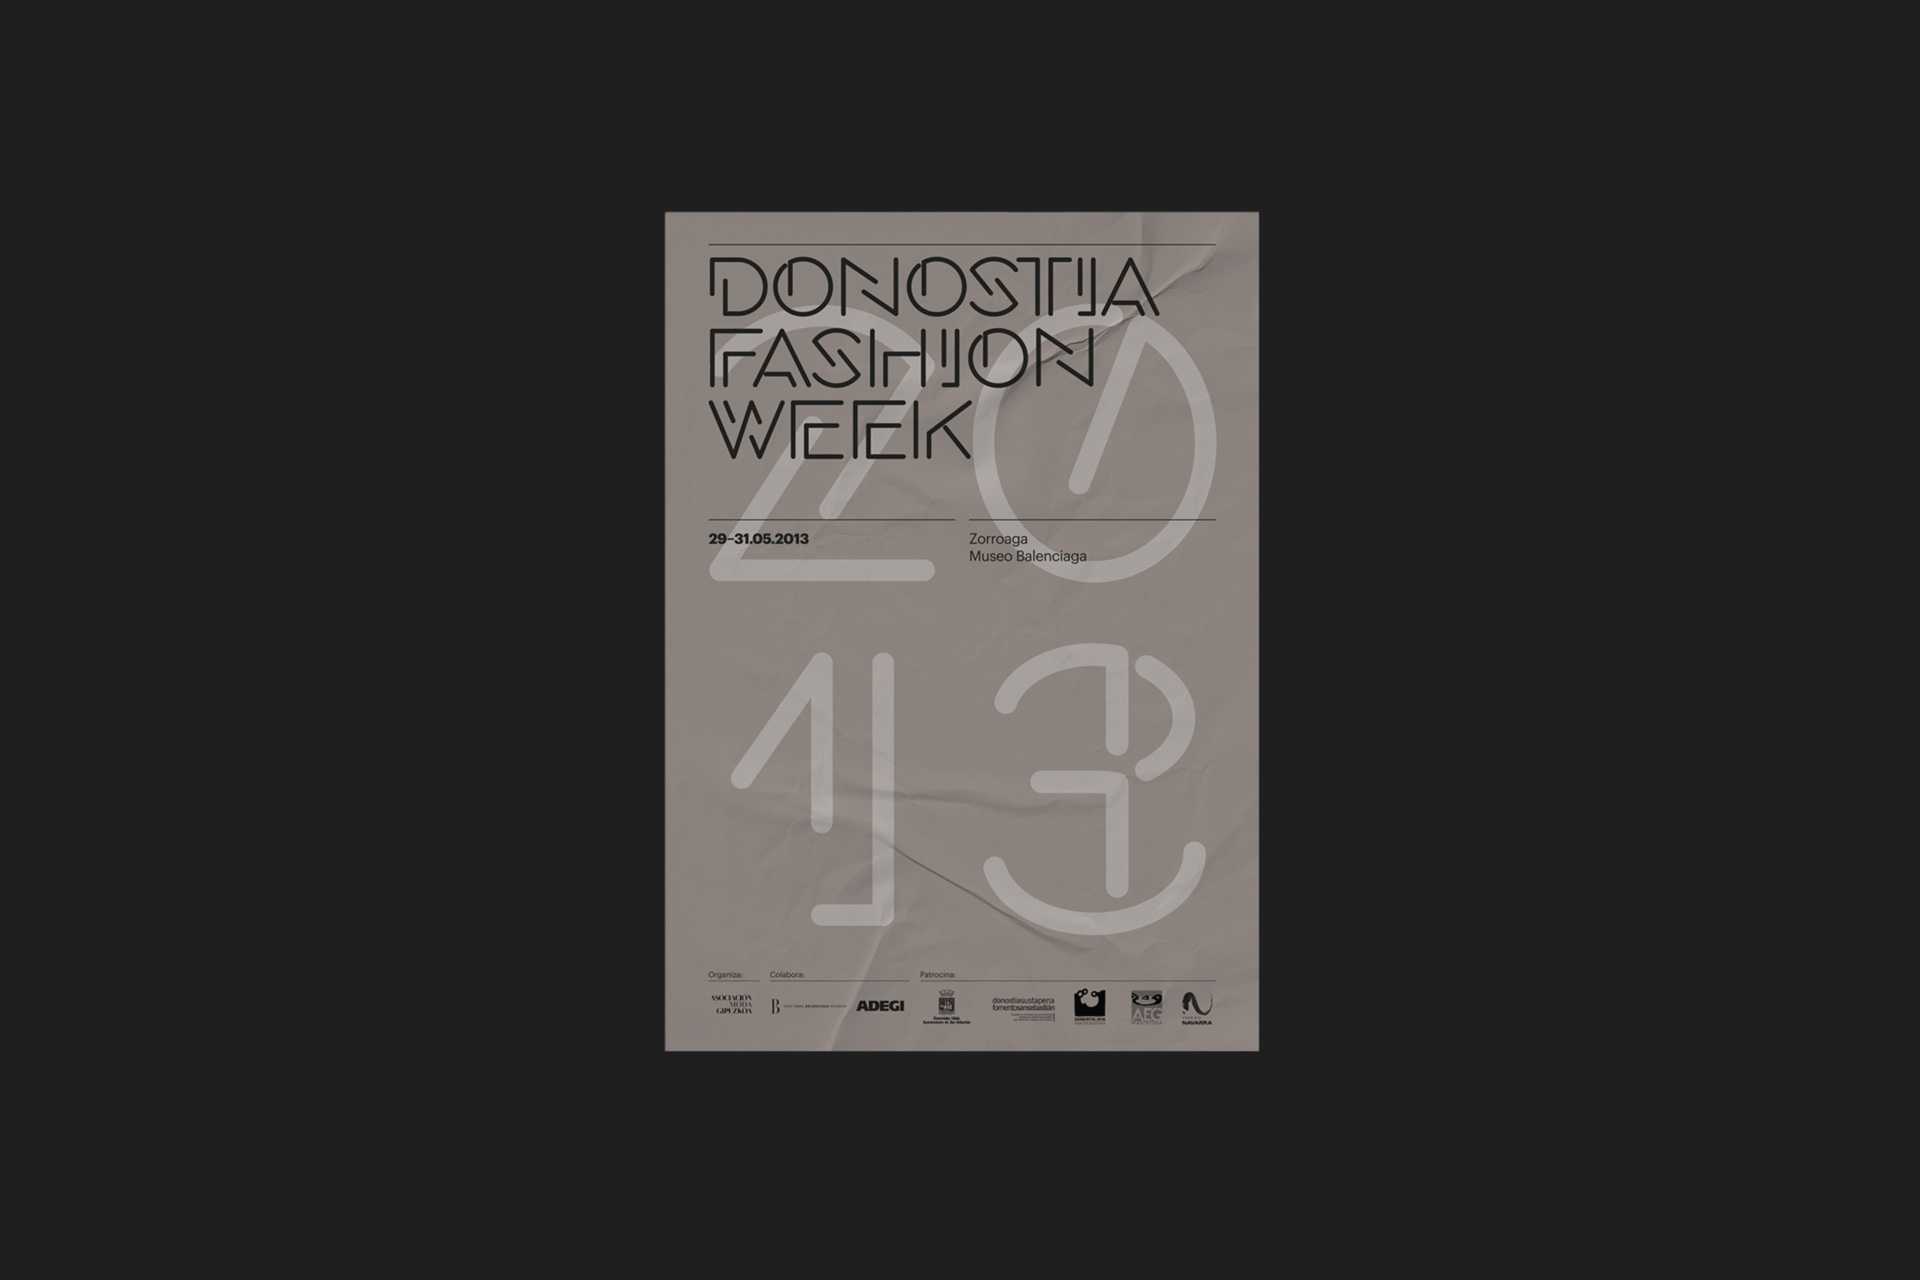 Fase, estudio de diseño gráfico. Identidad corporativa para Donostia Fasion Week.